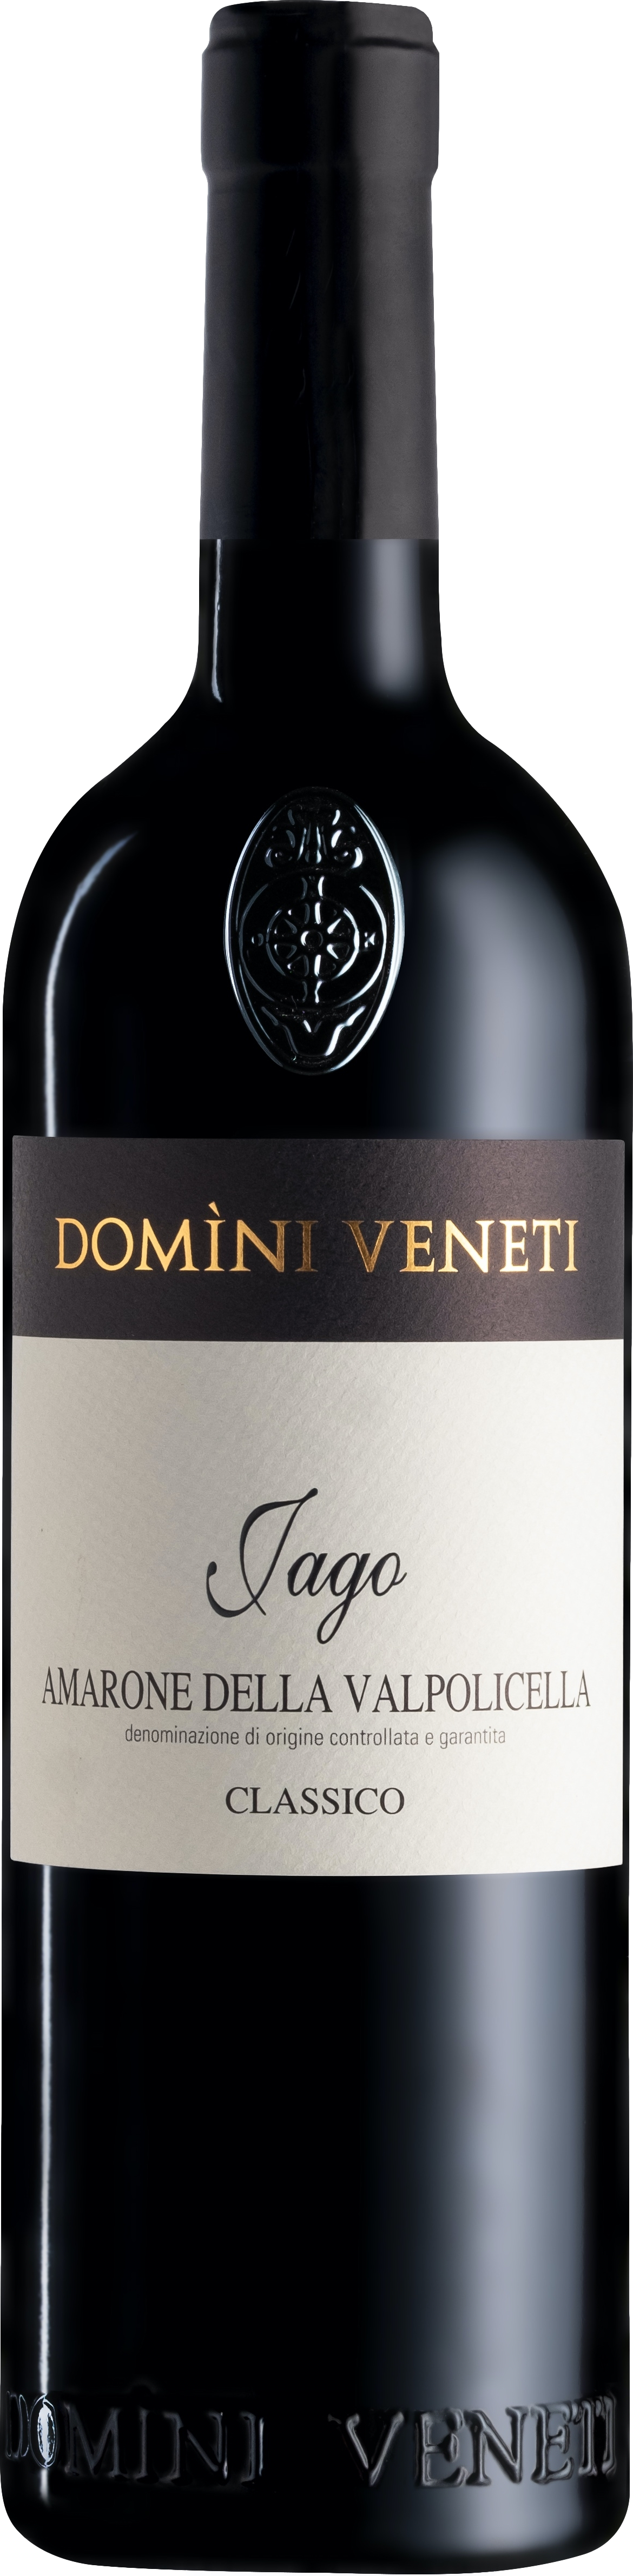 Domini Veneti Vigneti di Jago Amarone della Valpolicella Classico 2015